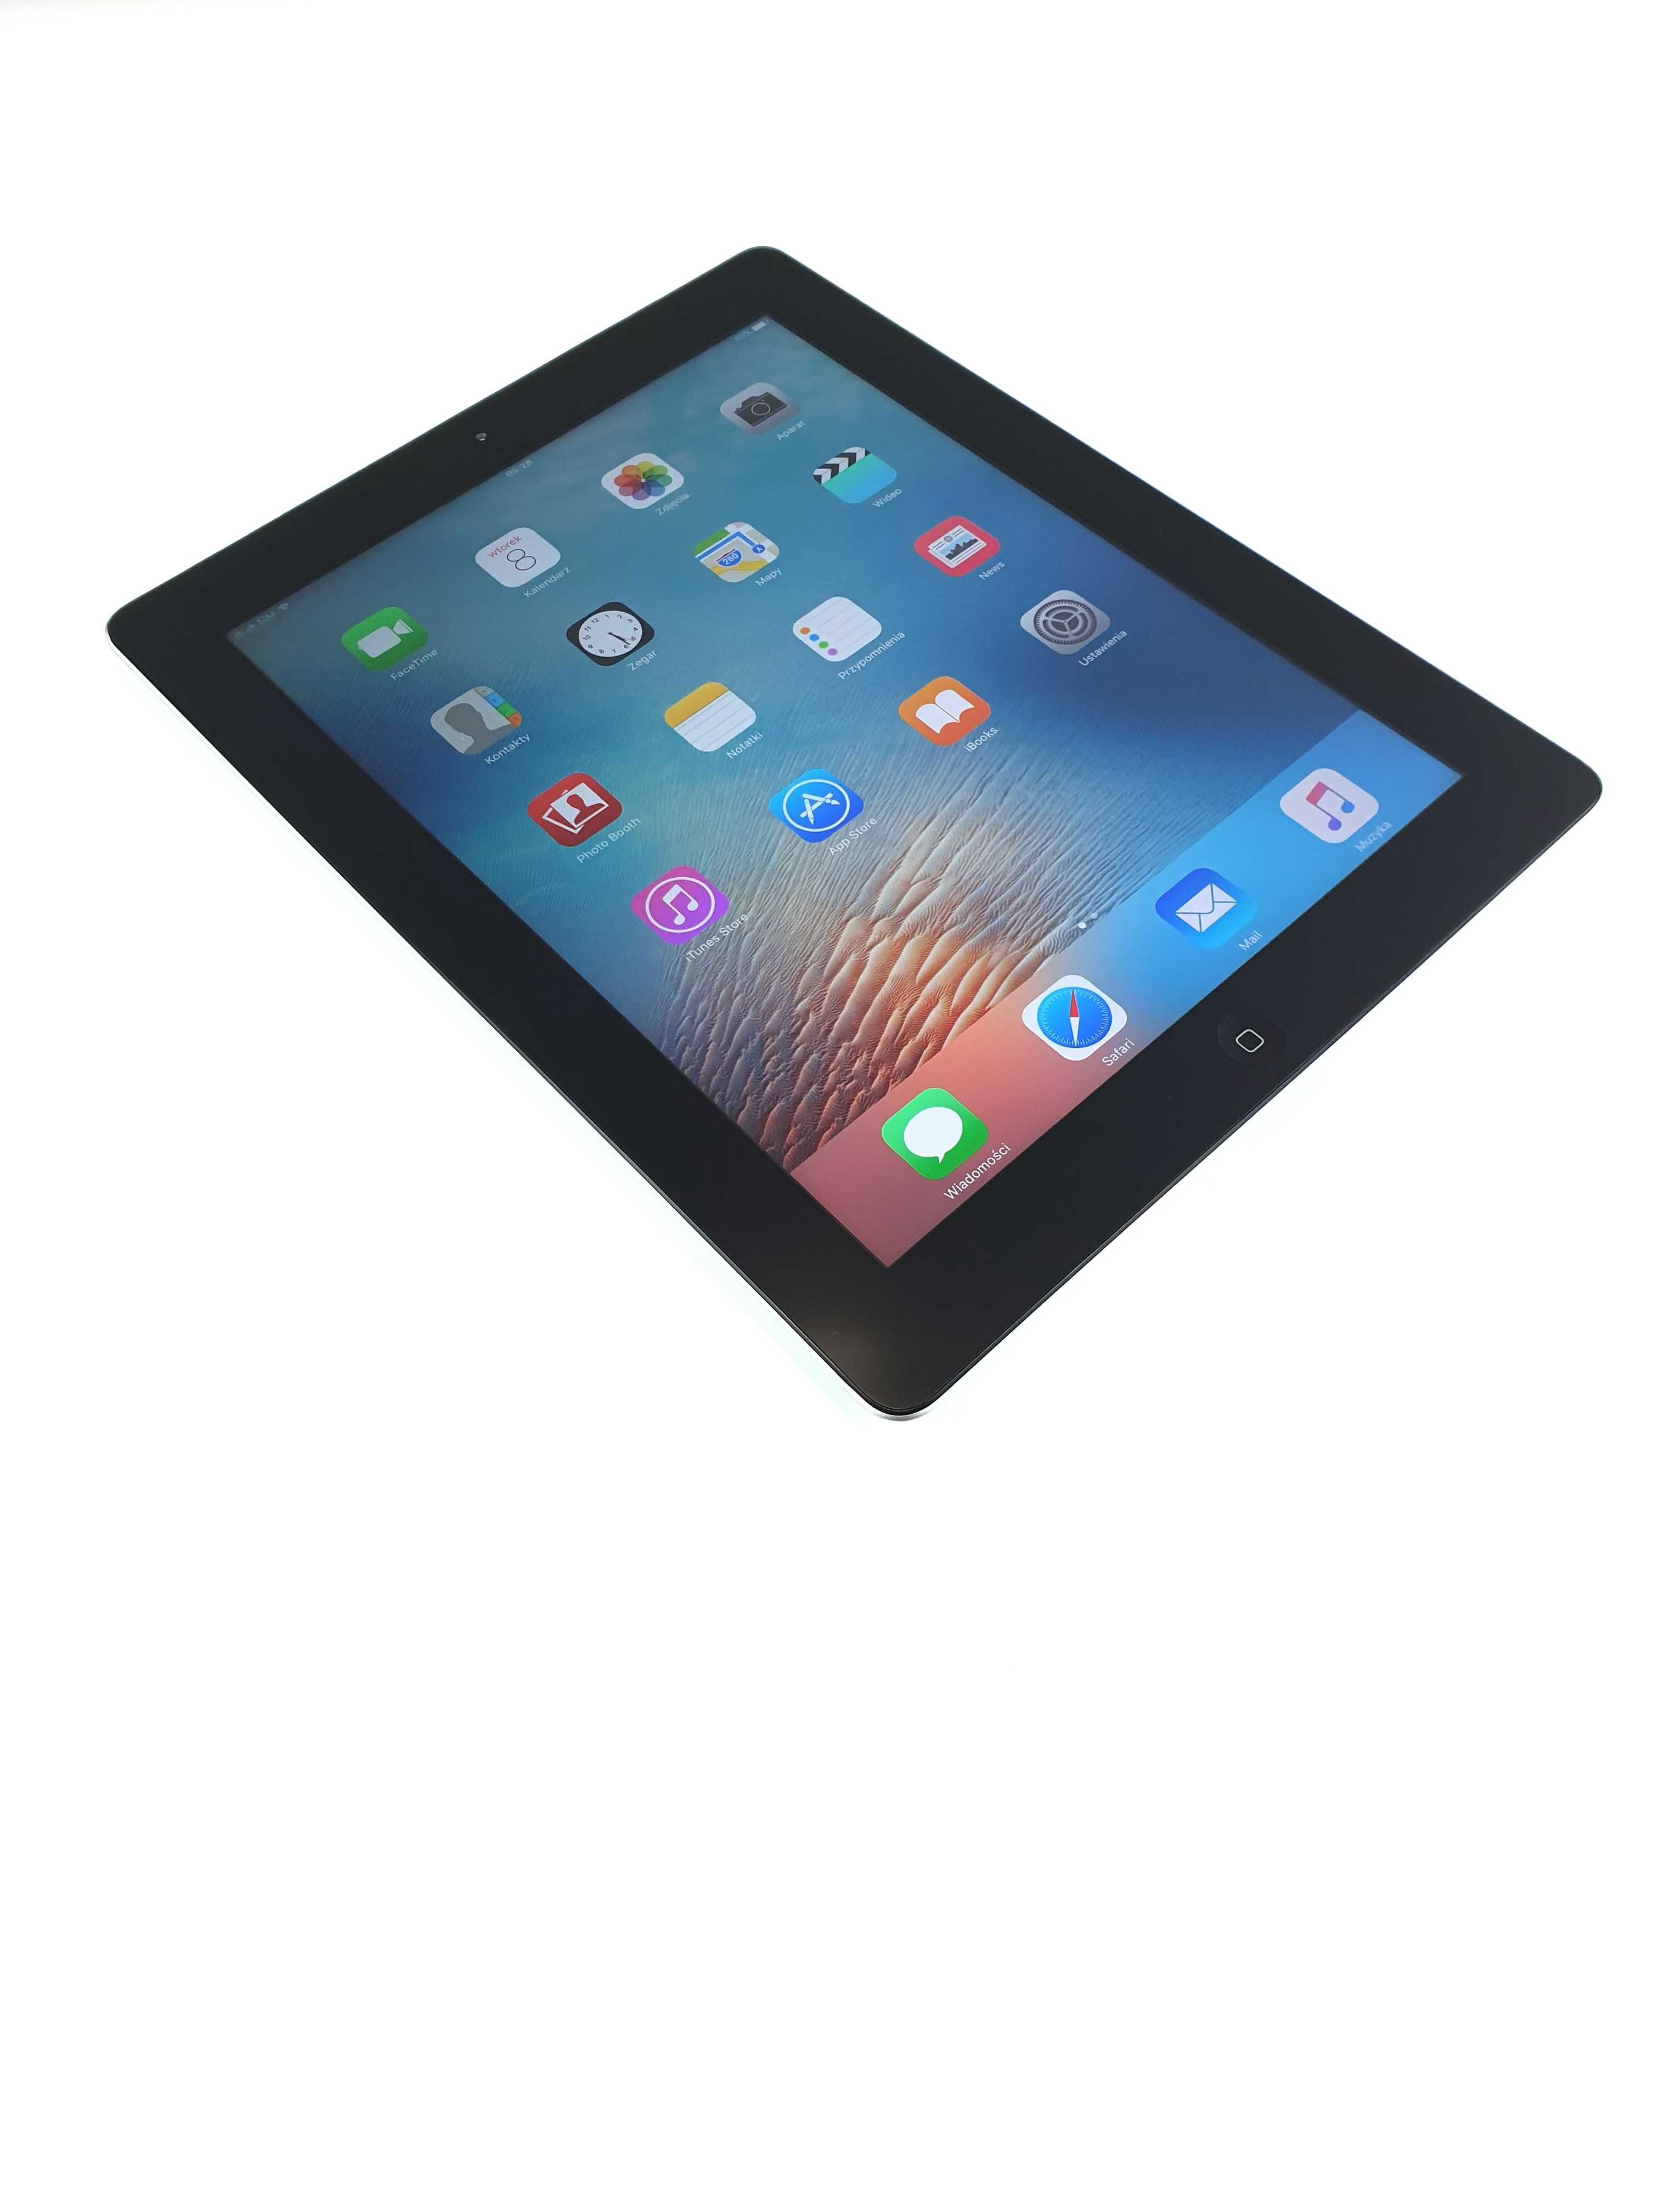 Tablet Apple iPad 3 | A1430| LTE | 64GB | FV23% #1751b iGen Lublin